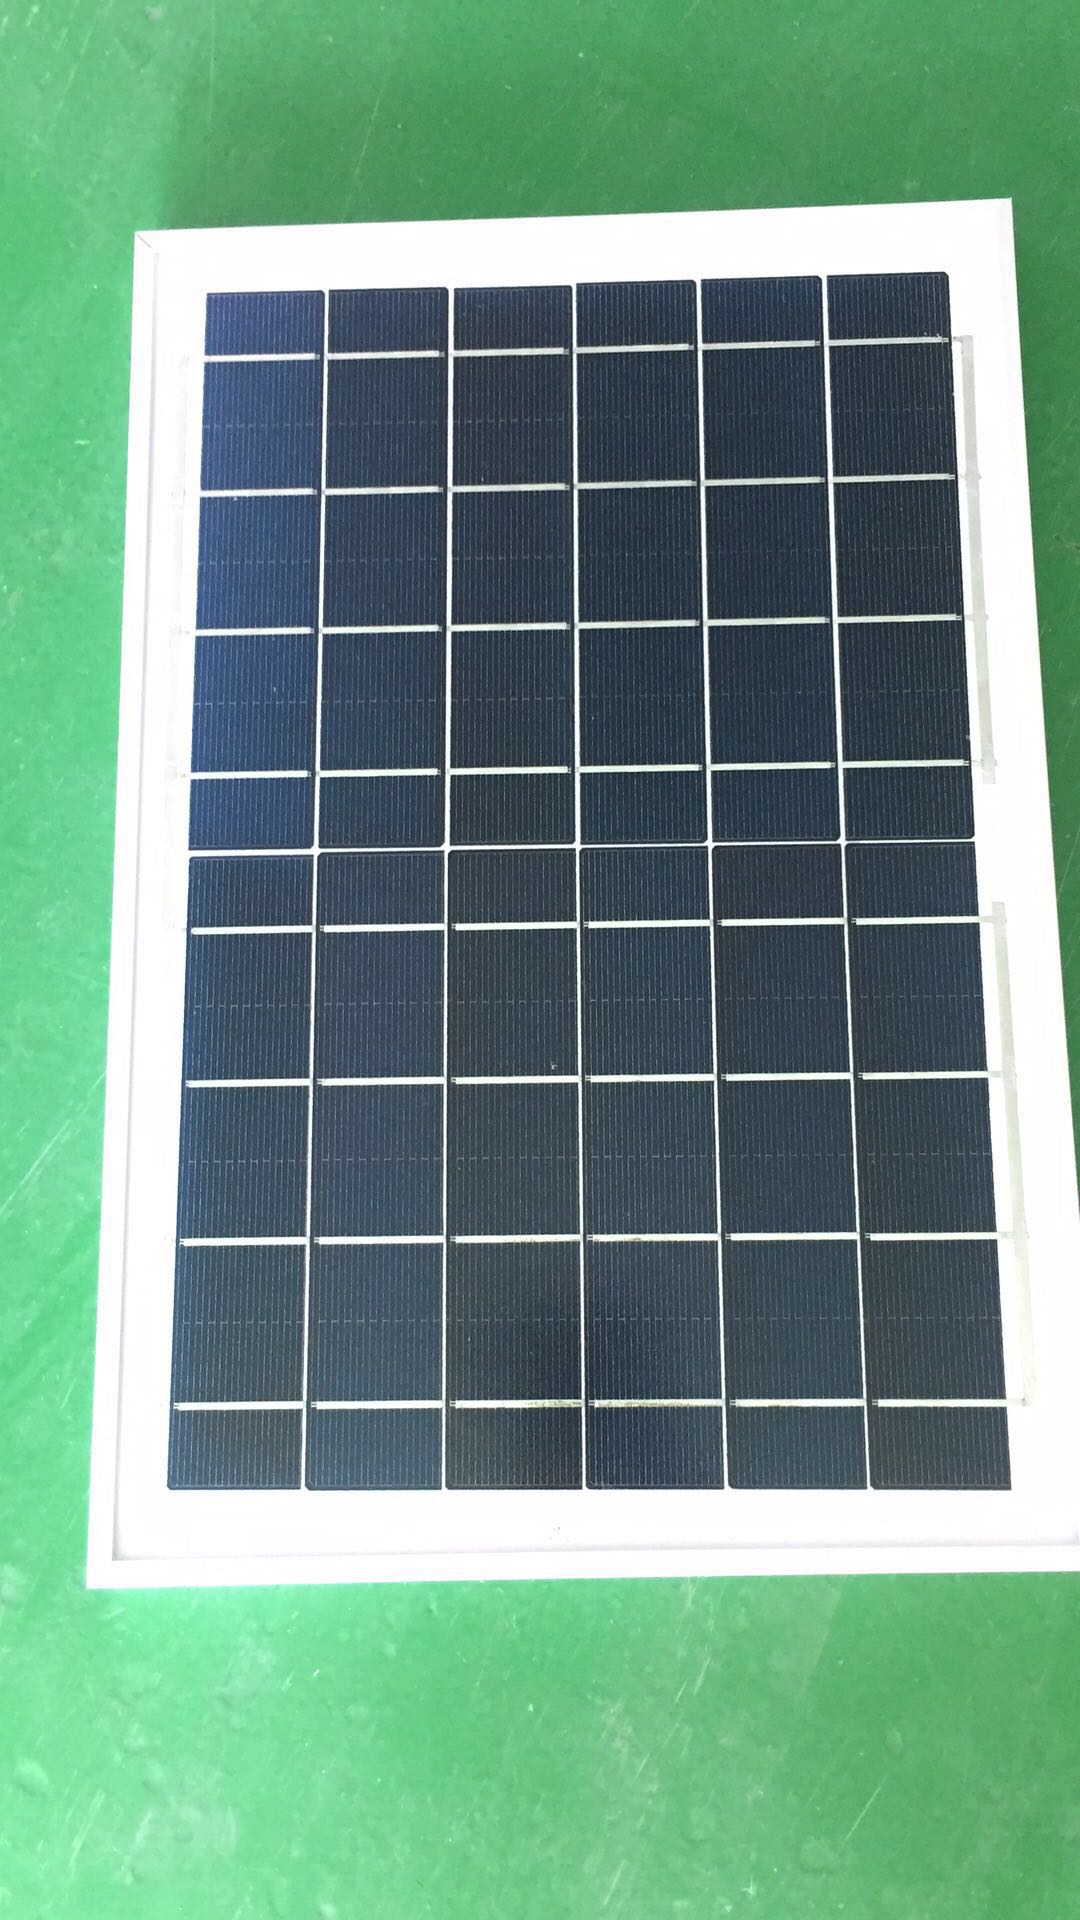 单晶太阳能电池板 太阳能电池板生产厂家 太阳能电池板供应商 太阳能电池板厂家直销 太阳能电池板定做 太阳能电池板定做价格